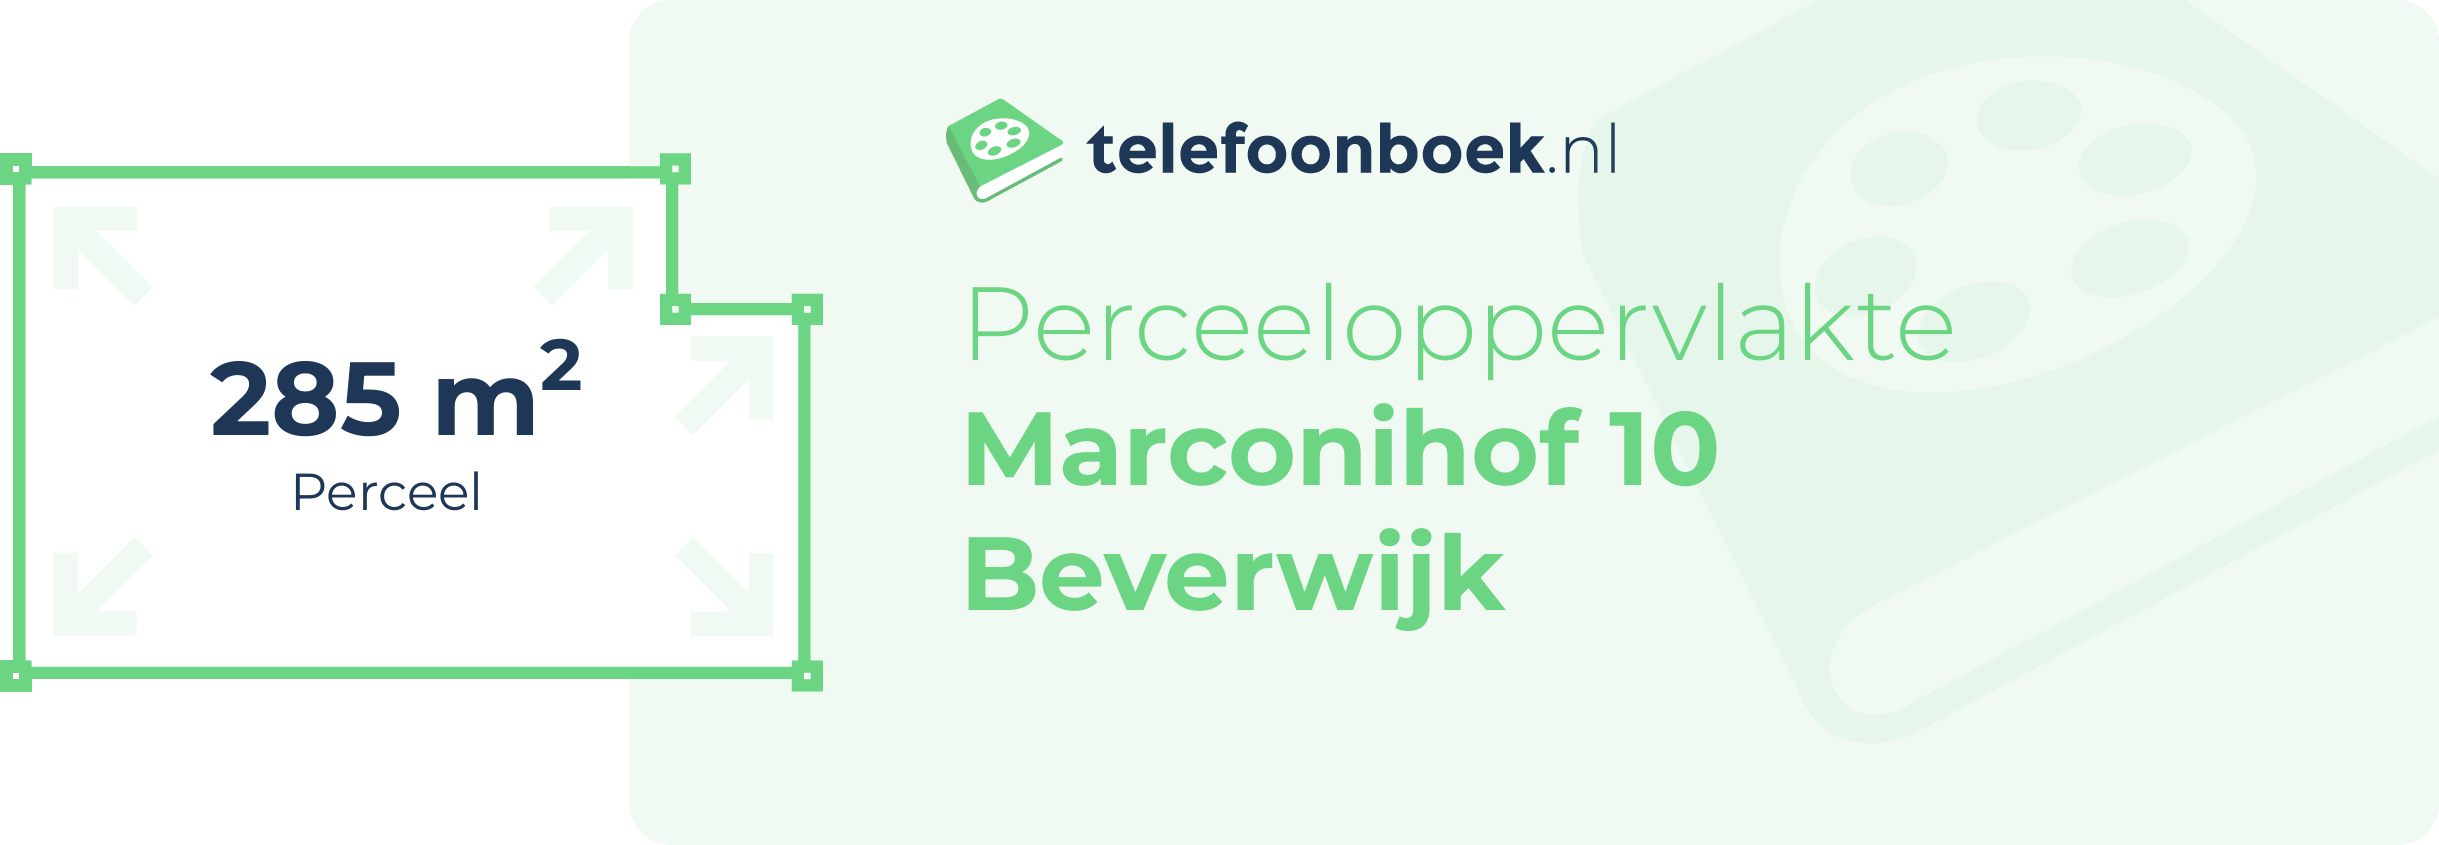 Perceeloppervlakte Marconihof 10 Beverwijk